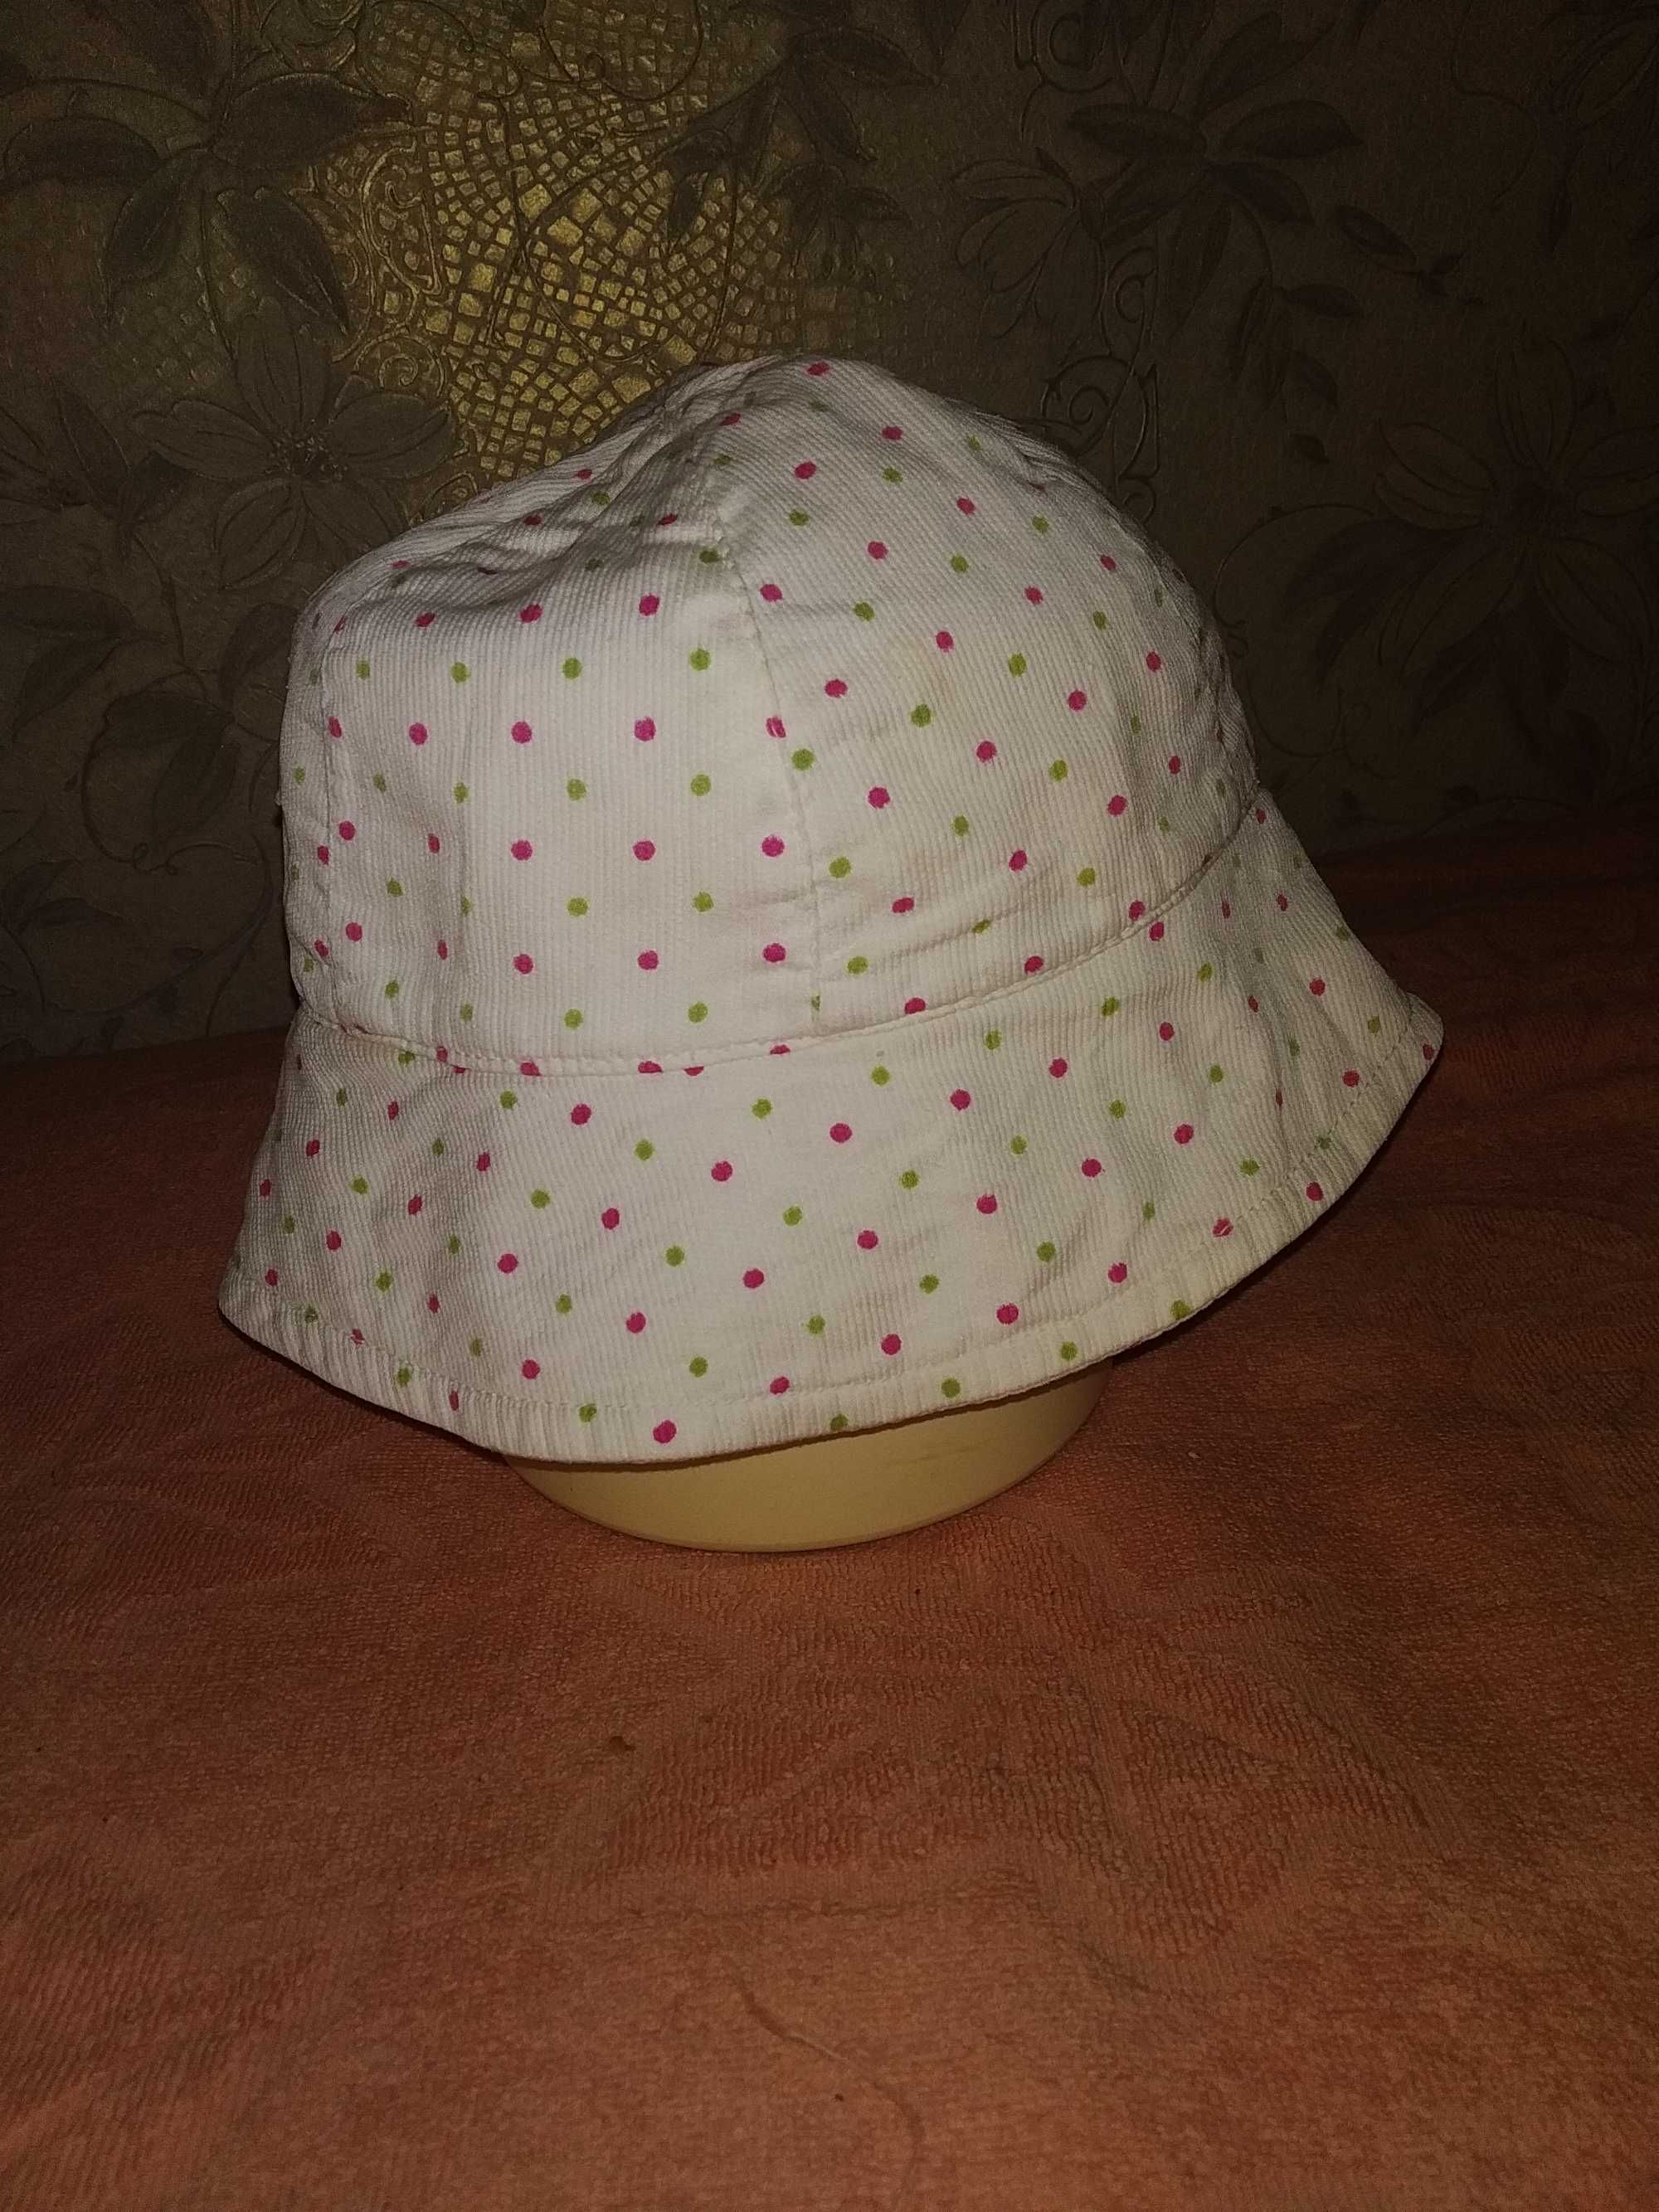 Головные уборы женские летние шляпки платки косынки